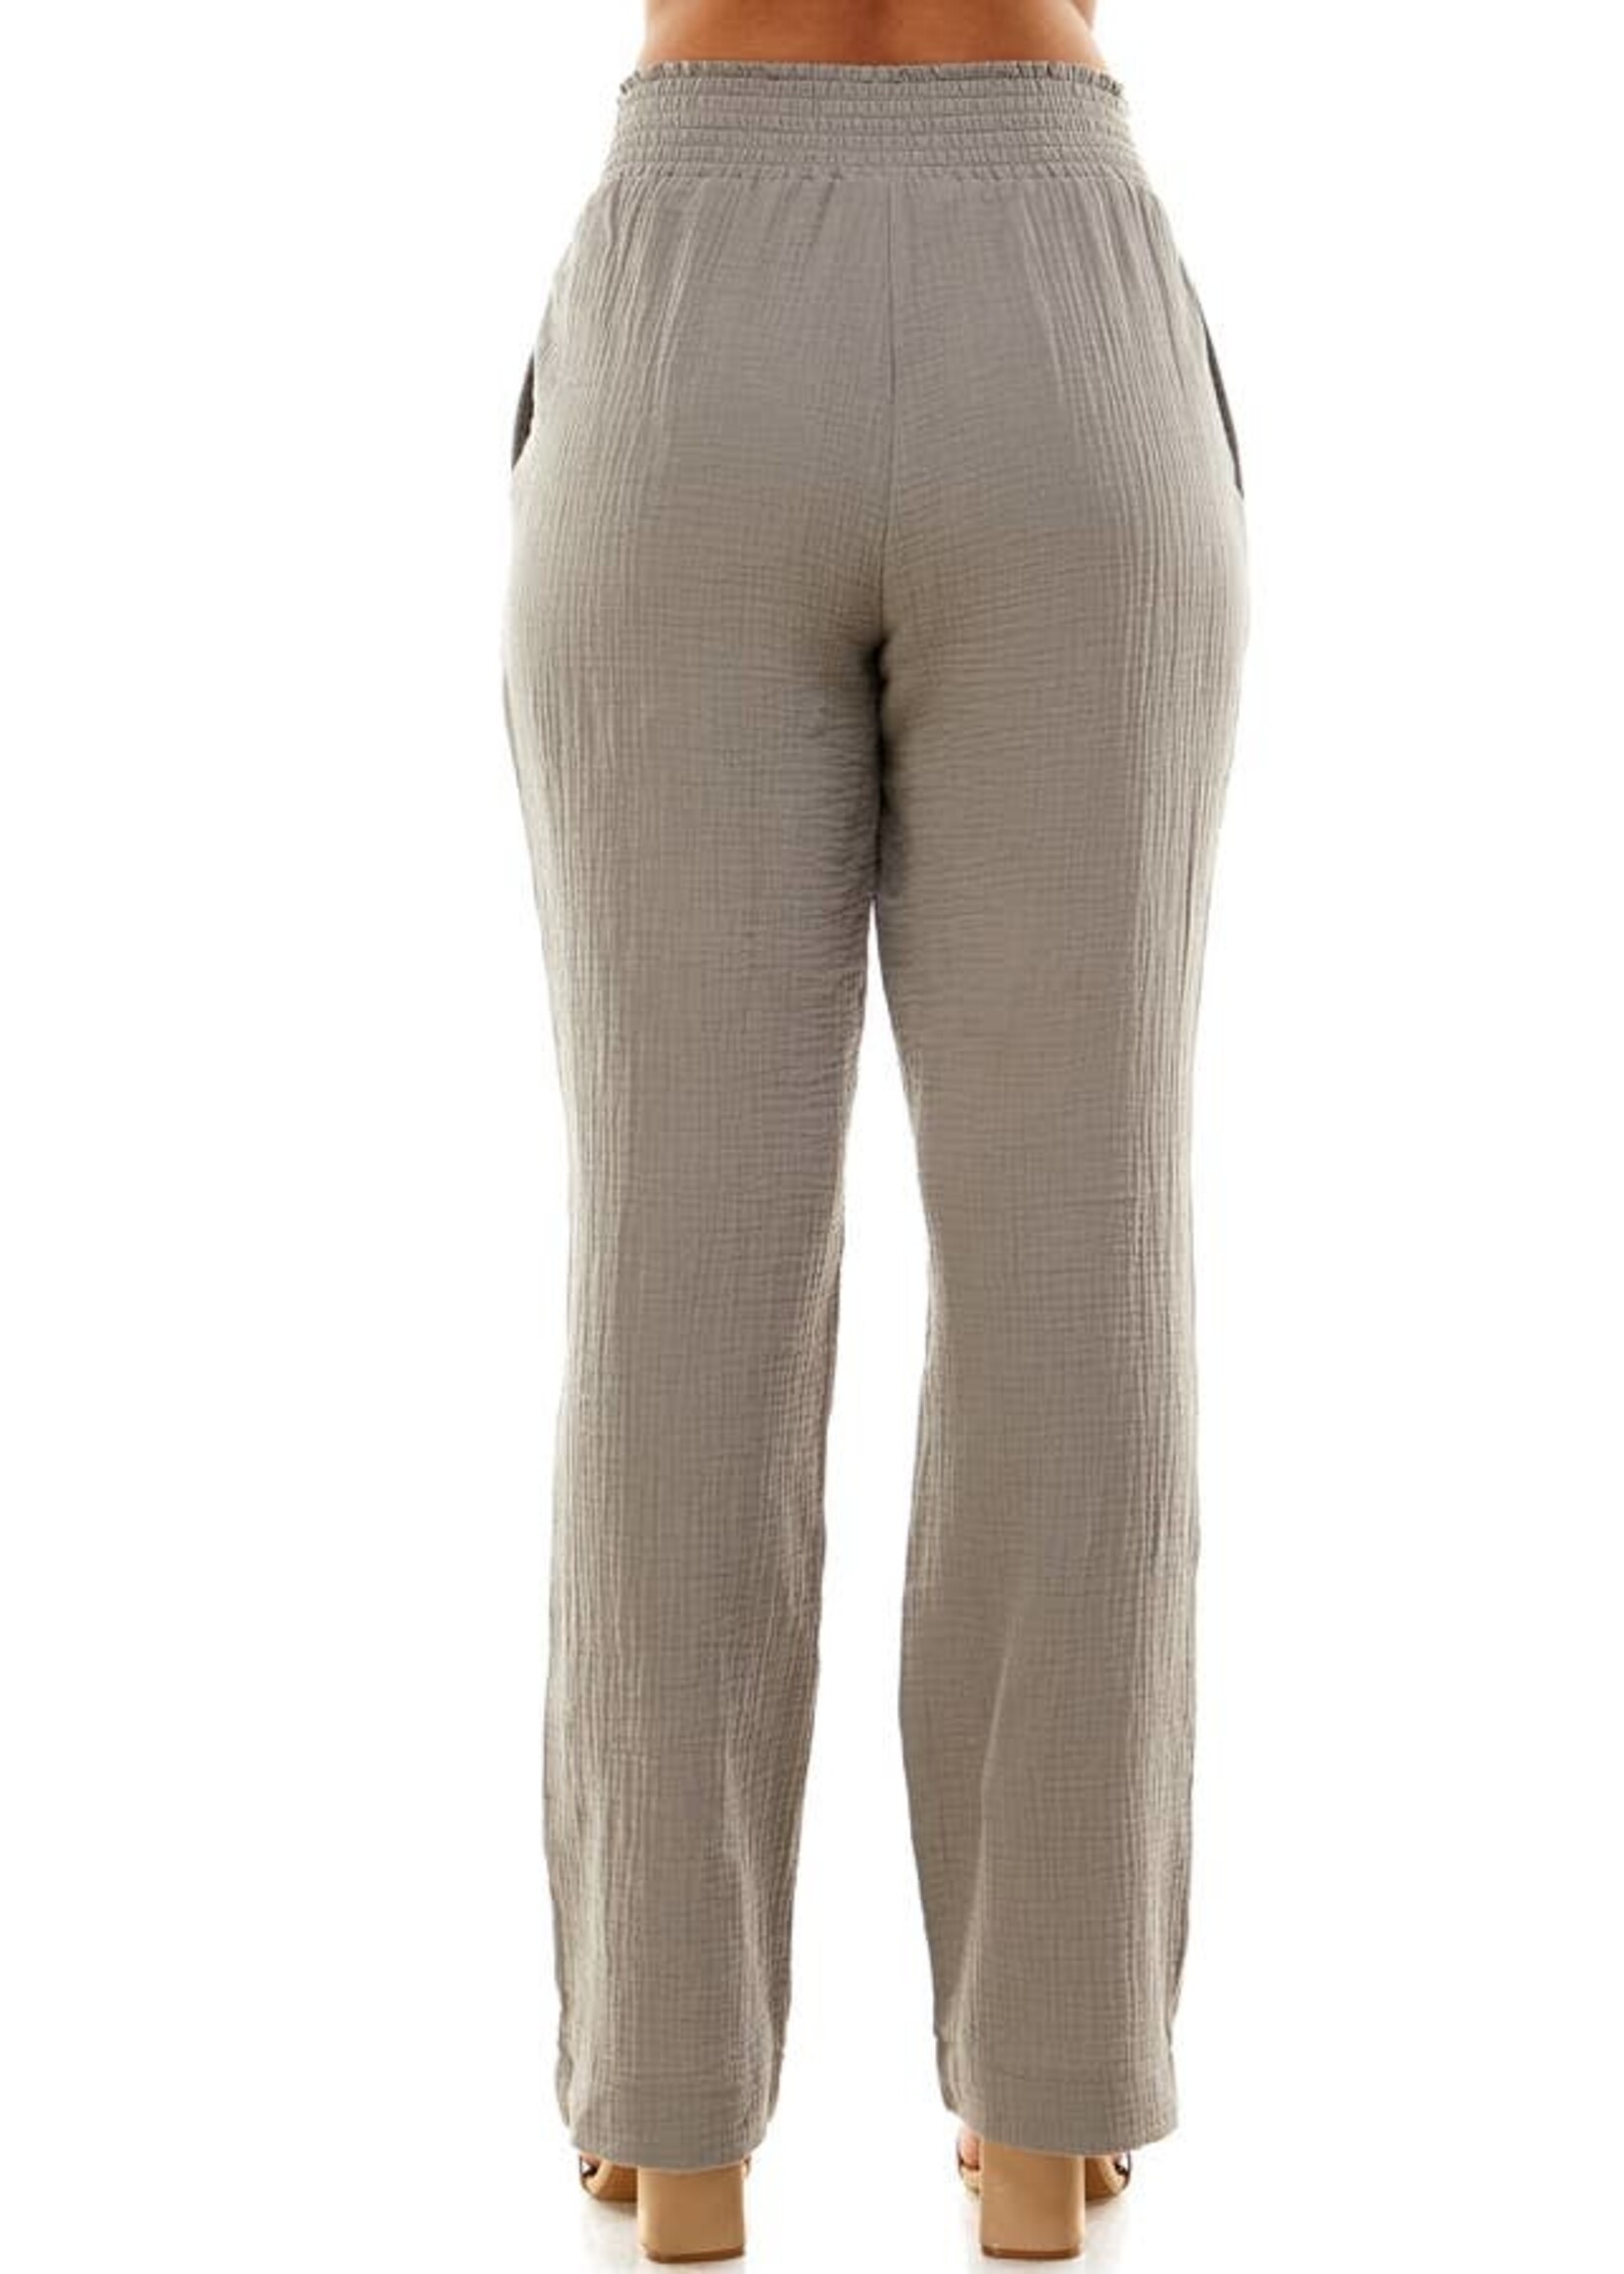 Grey Double Gauze Pants with Elastic Waistband